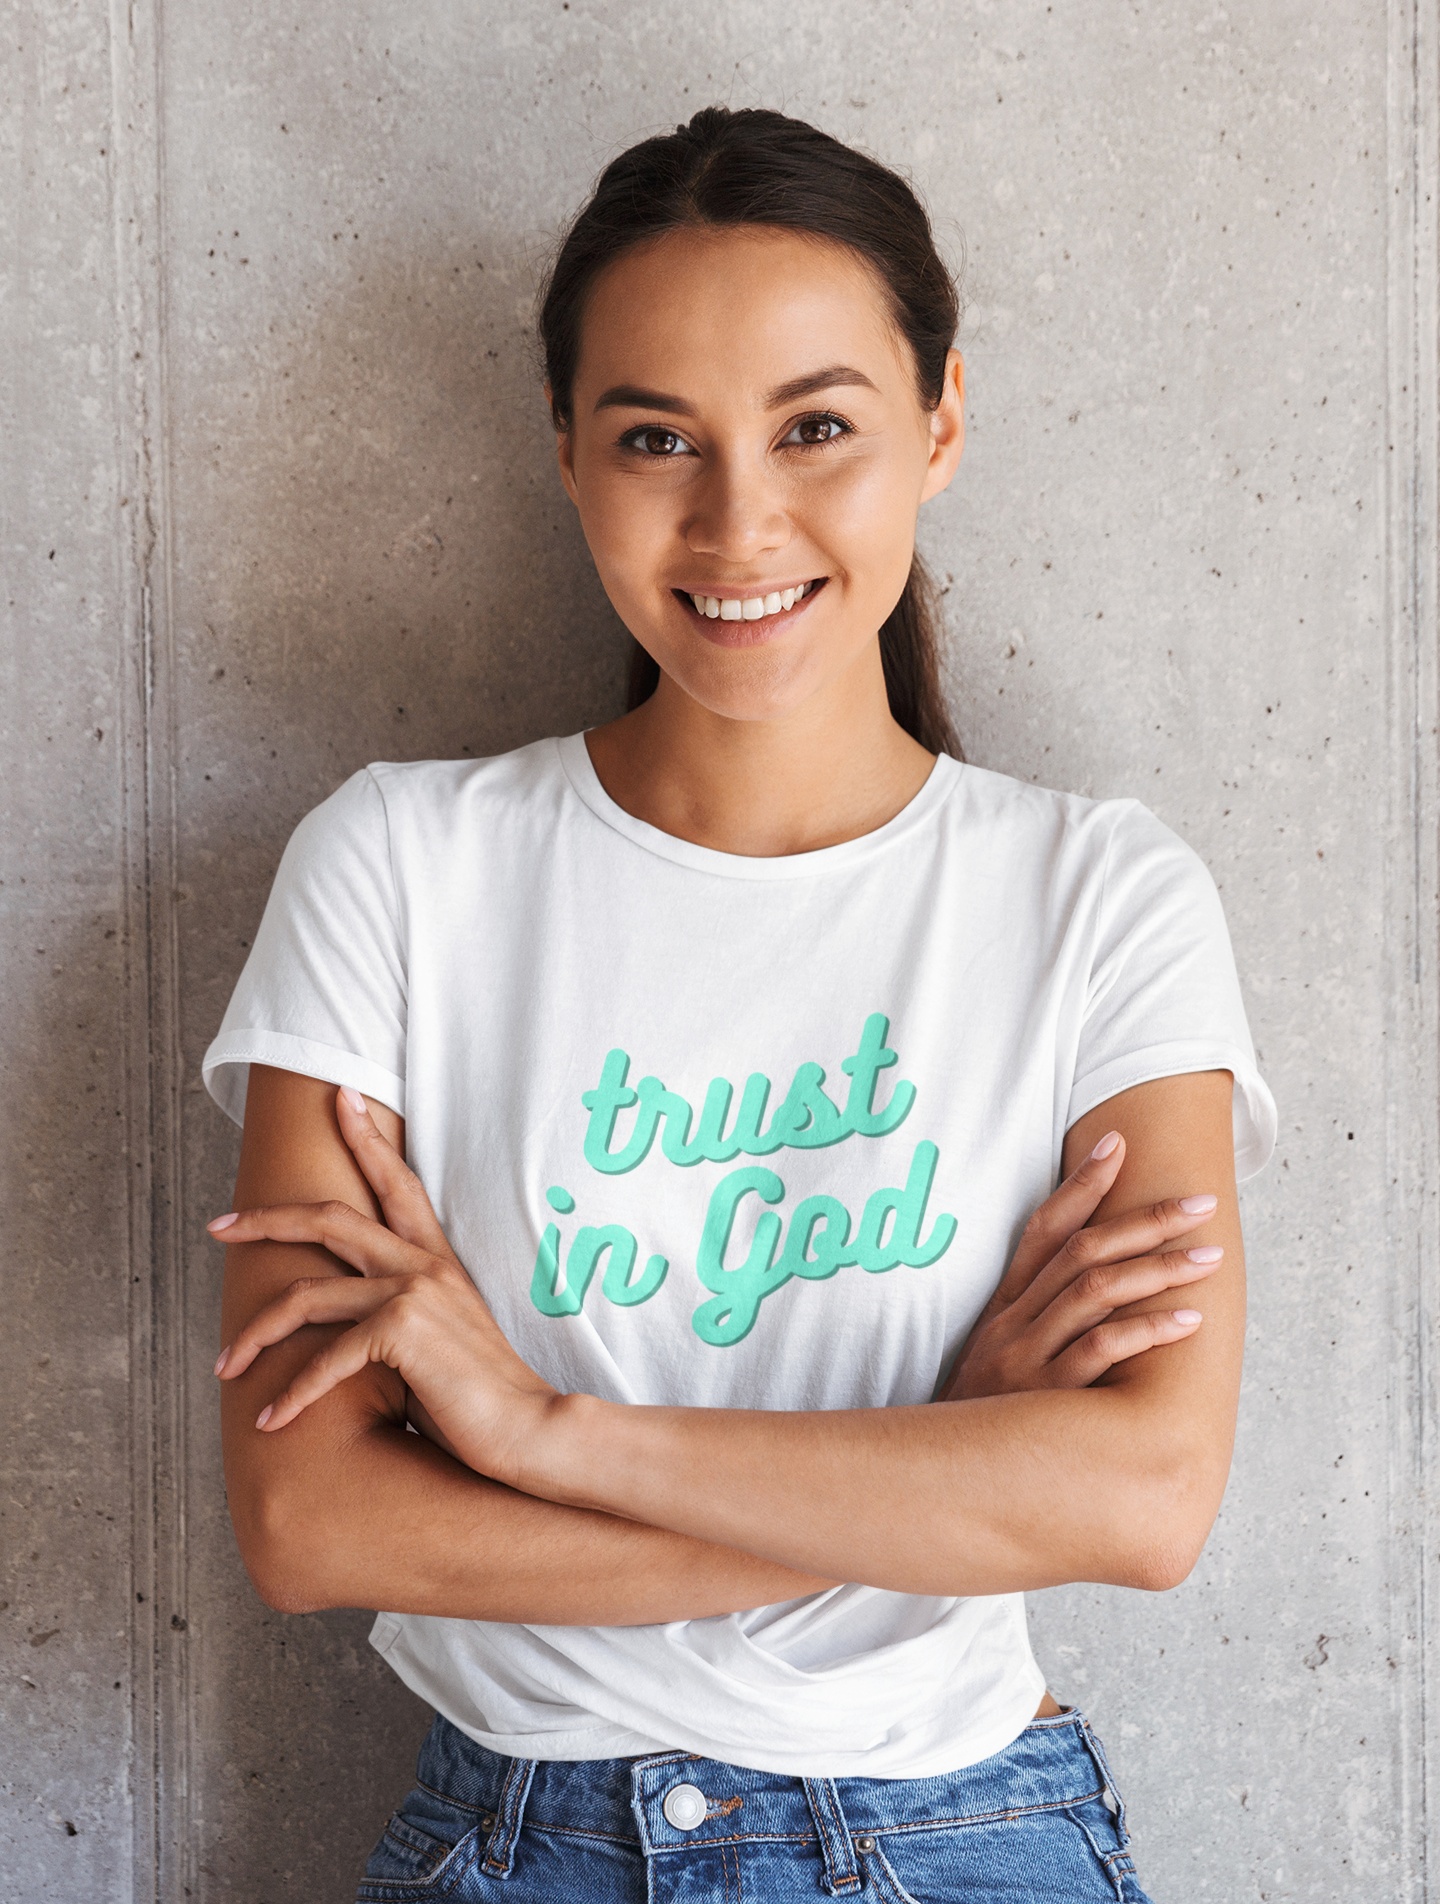 Christian T-Shirt - Trust In God - Women